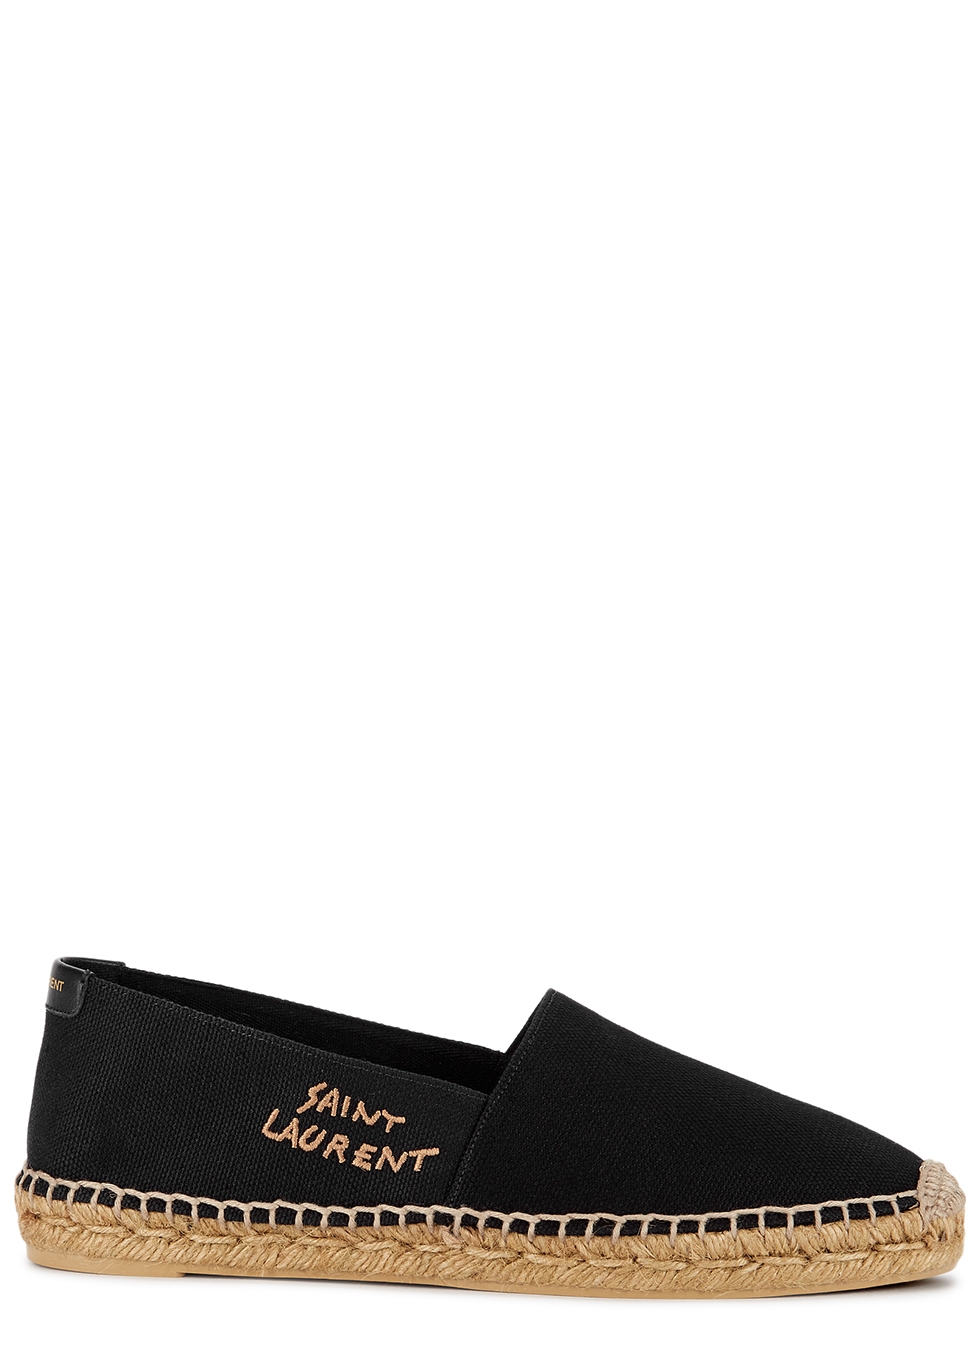 Saint Laurent Black logo canvas espadrilles - Harvey Nichols